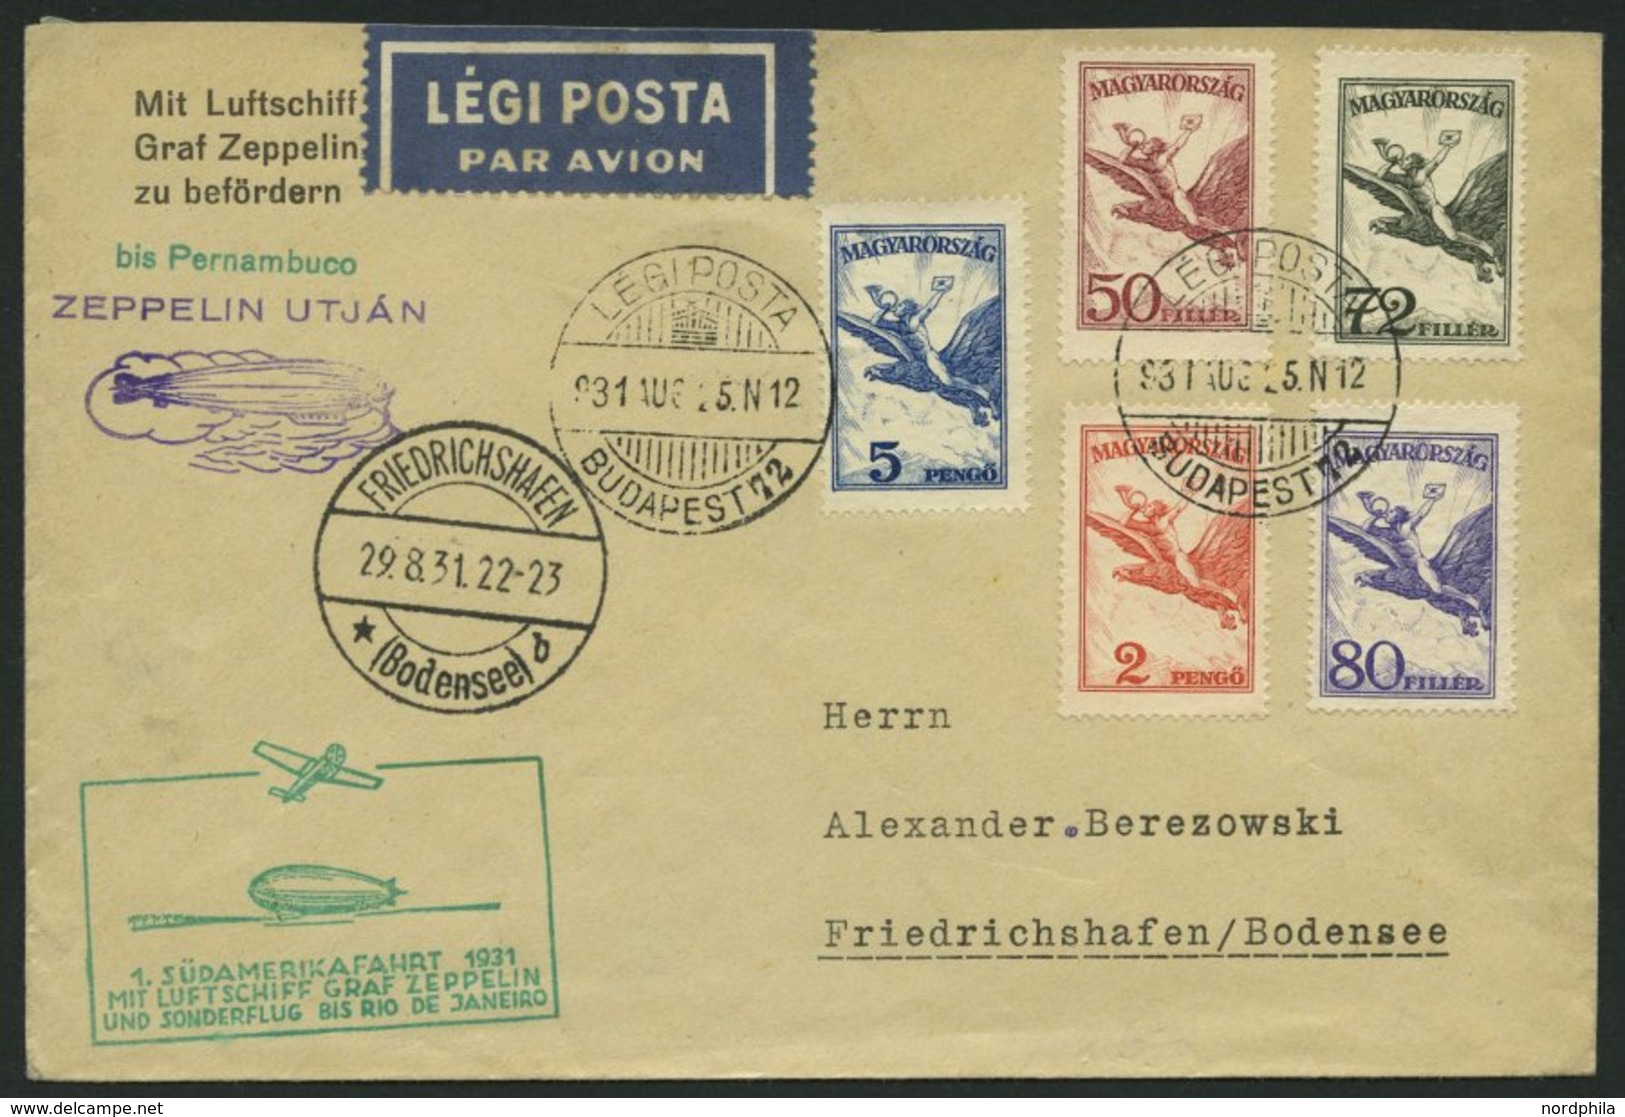 ZULEITUNGSPOST 124Ca BRIEF, Ungarn: 1931, 1. Südamerikafahrt, Bis Rio De Janeiro, Prachtbrief - Zeppelin